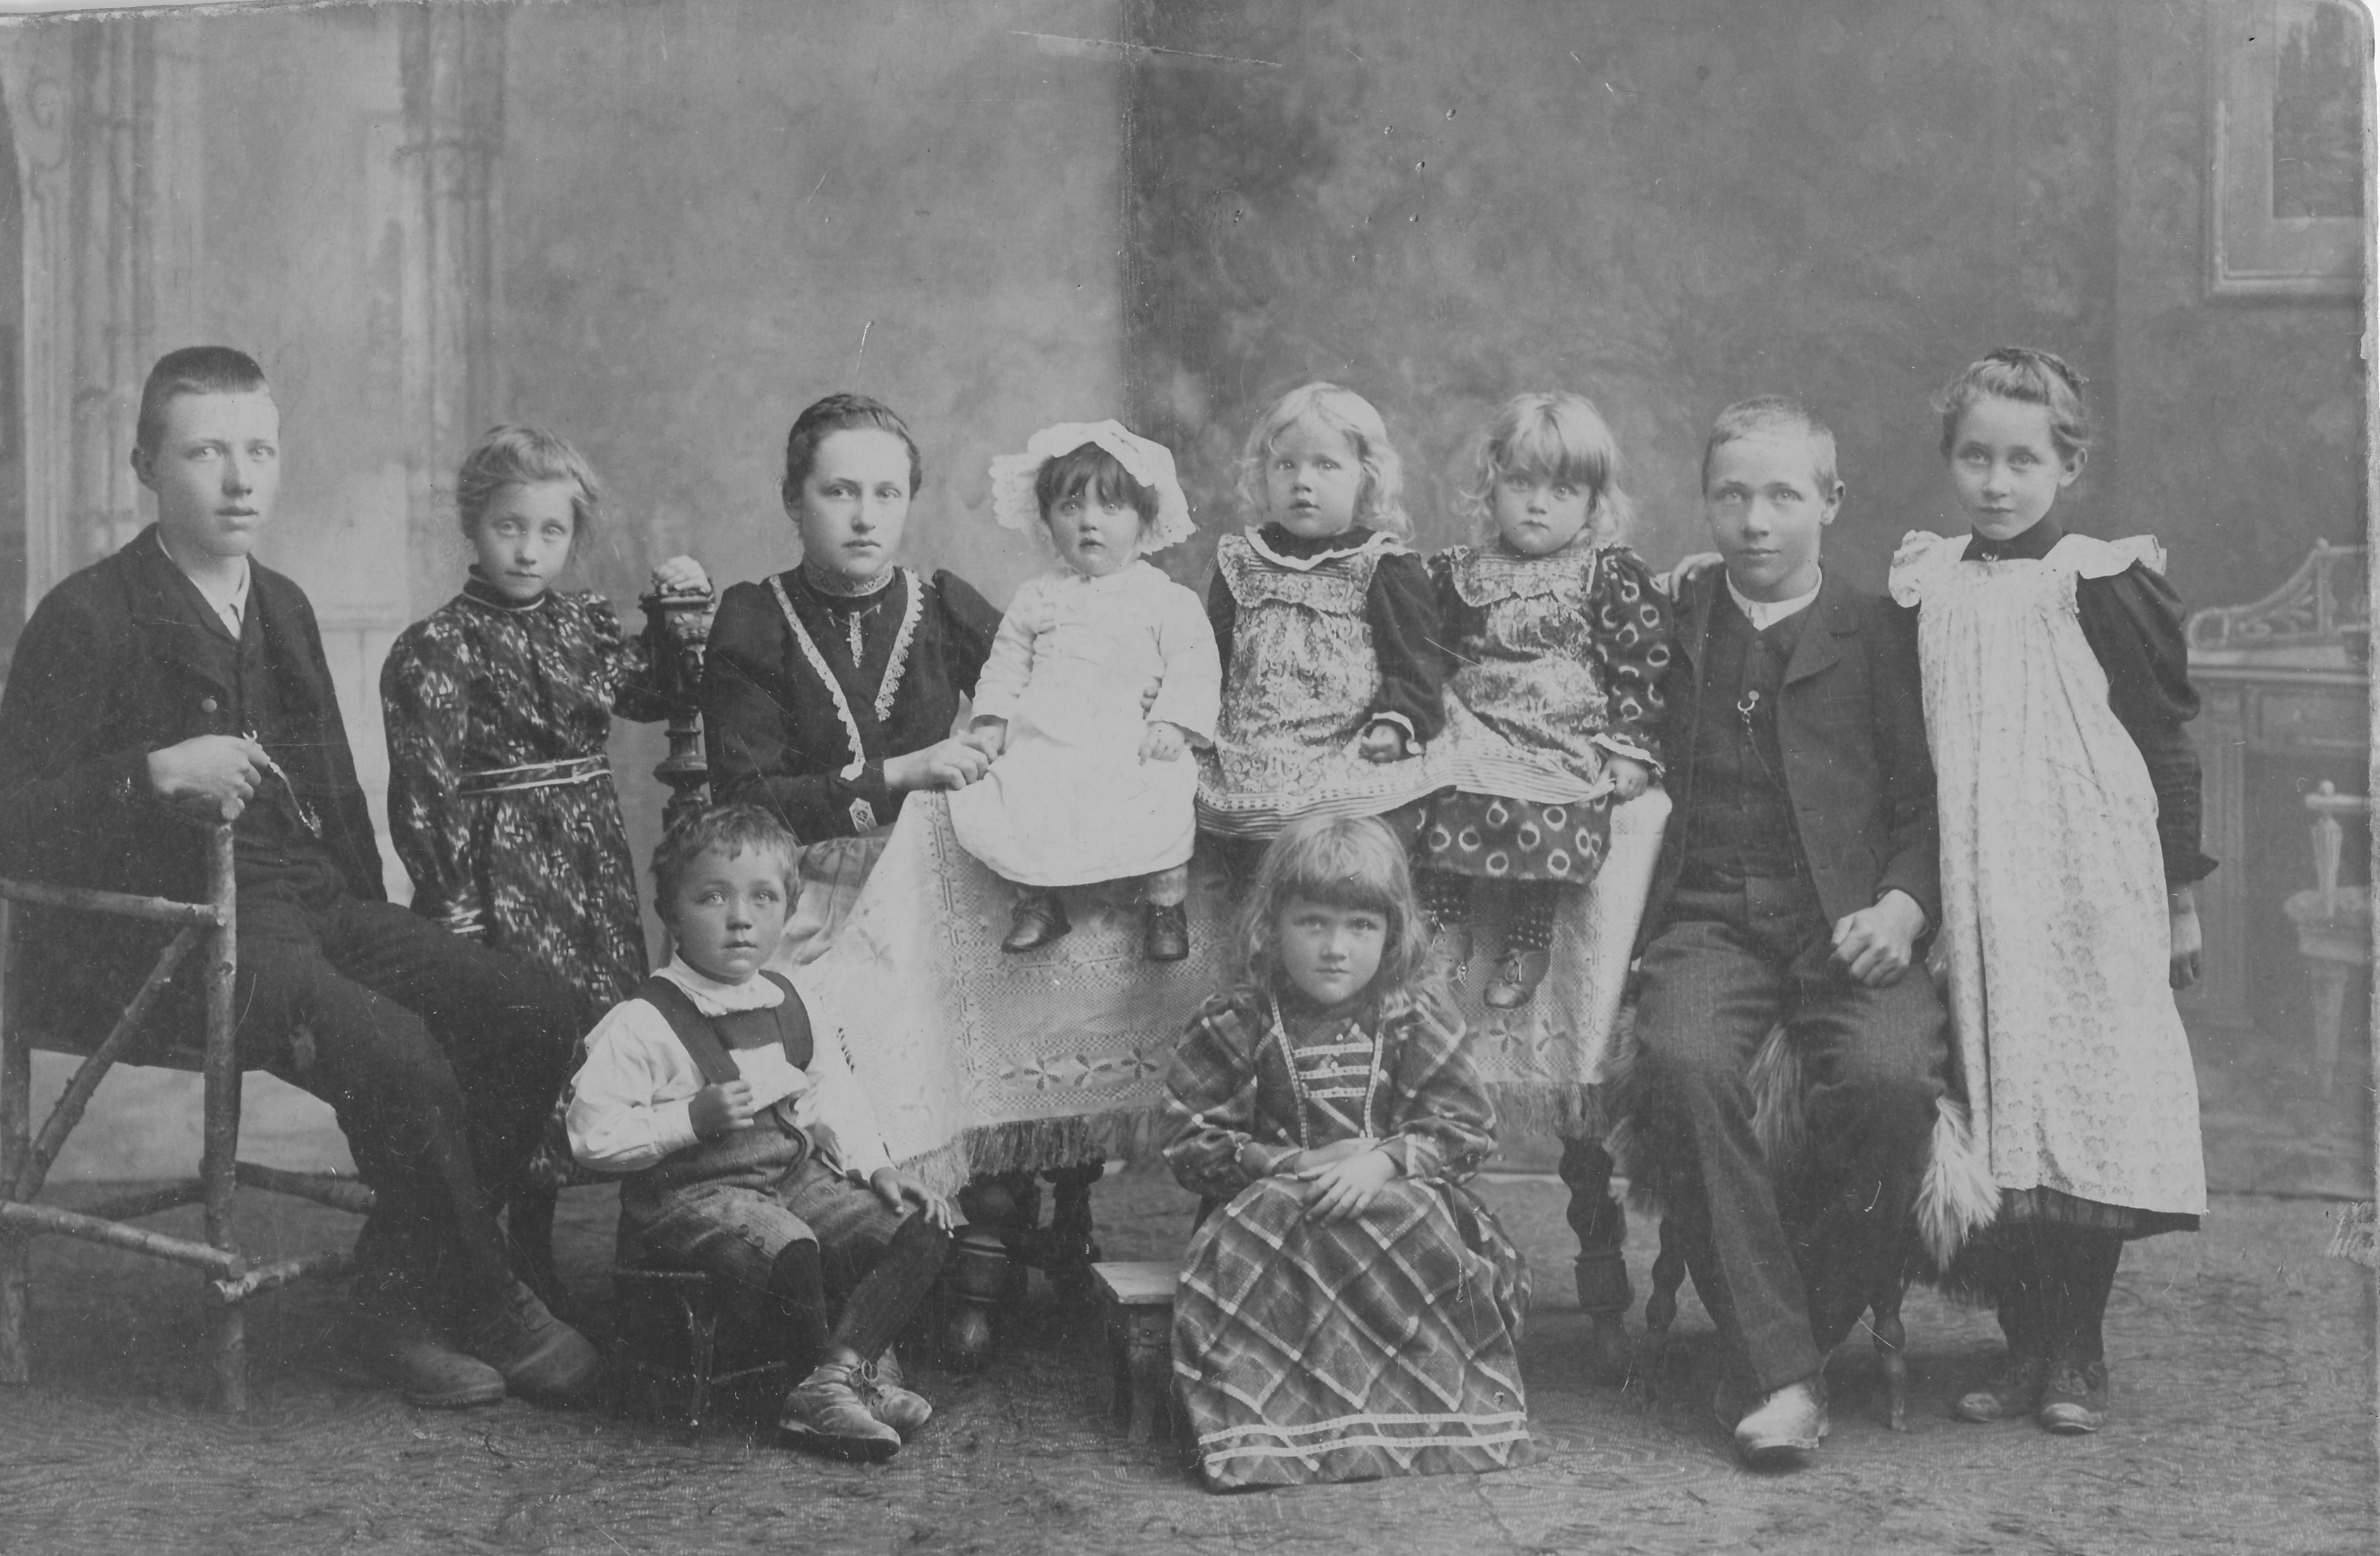 Pletzer Family, Austria